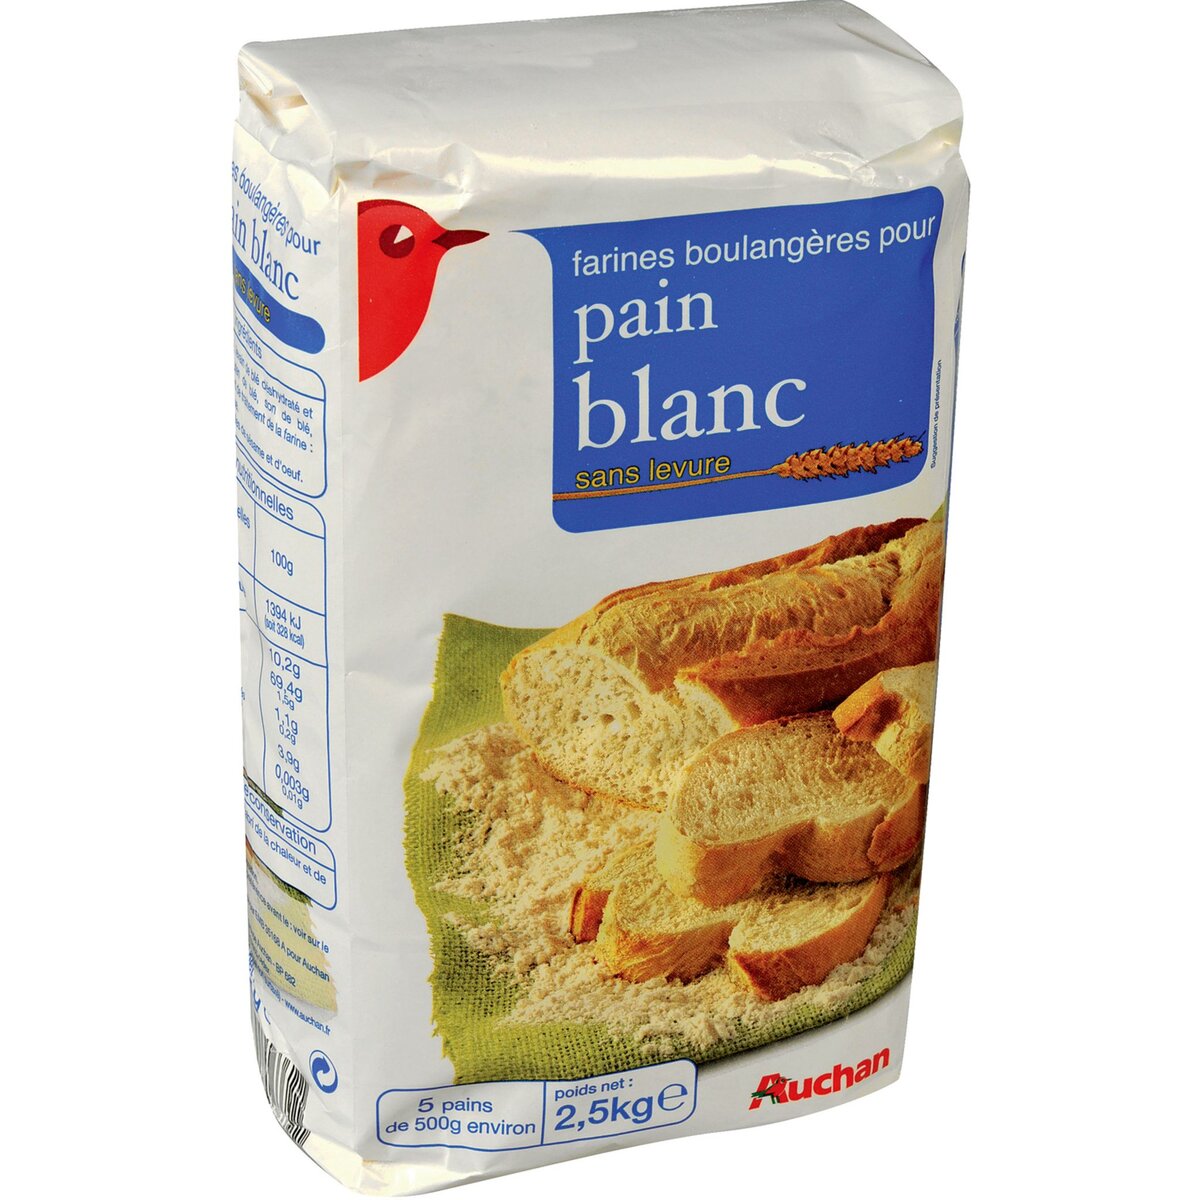 AUCHAN Farine boulangère sans levure pour pain blanc 2,5kg